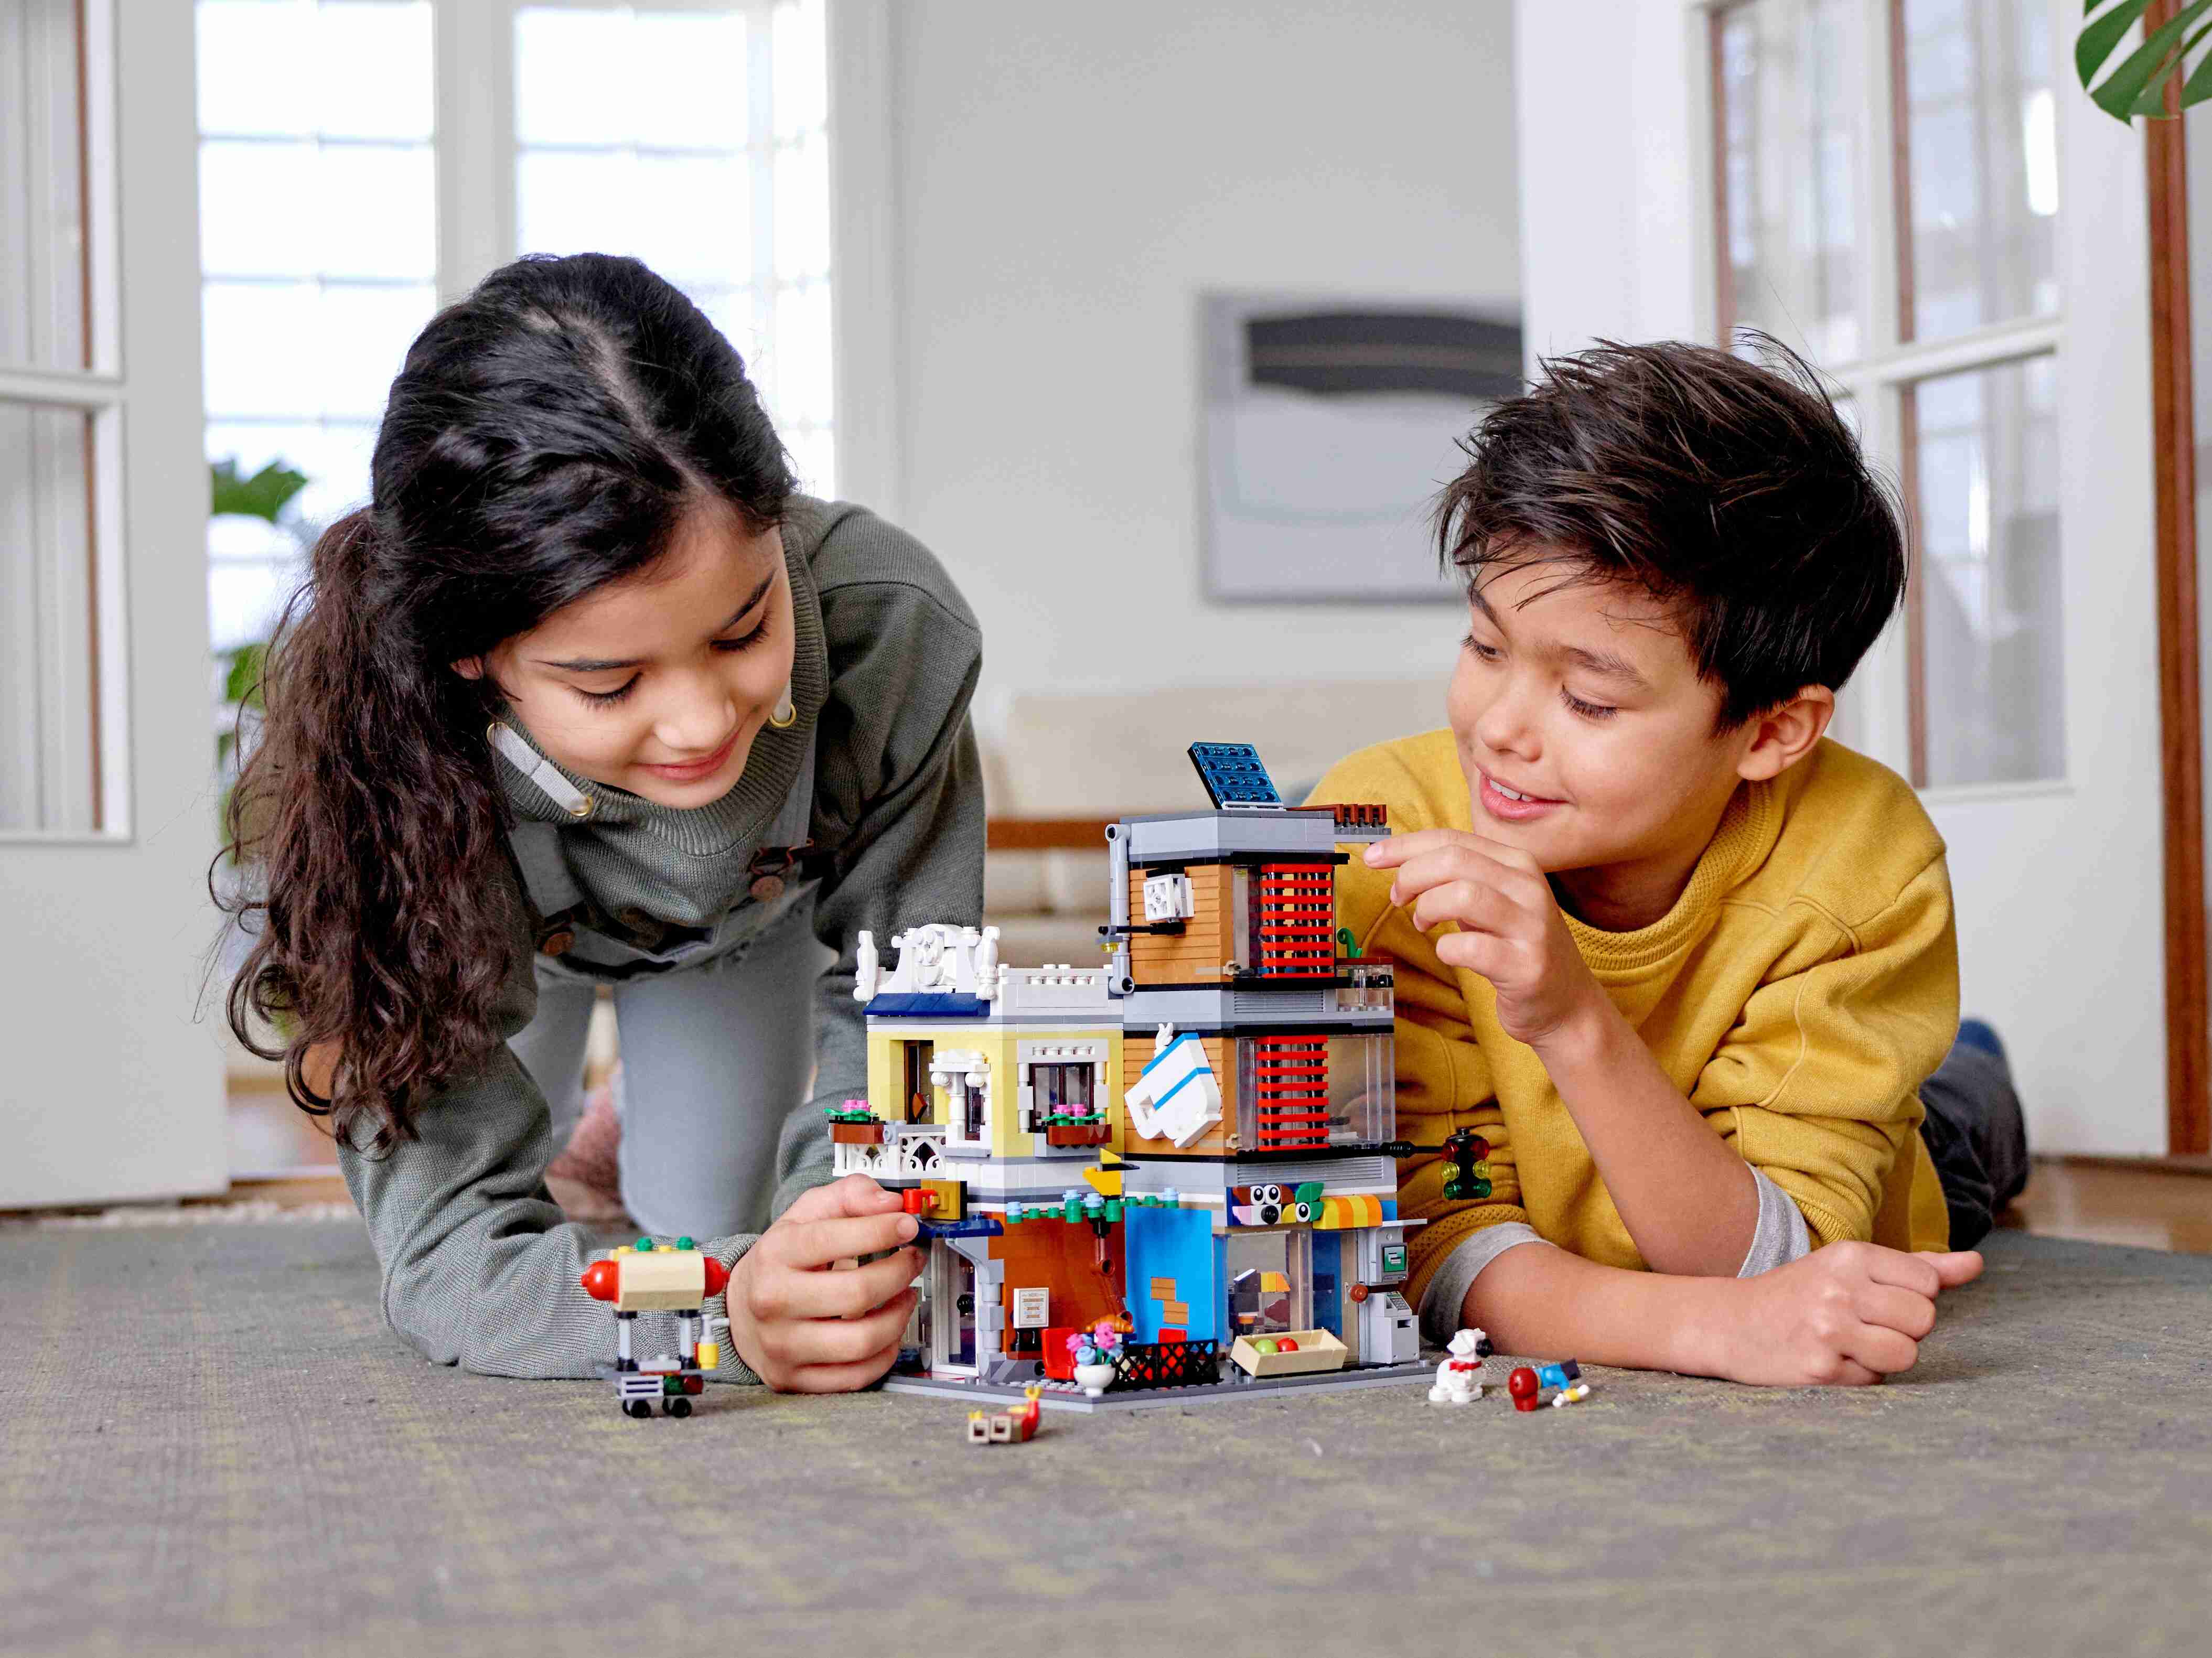 LEGO 31097 Creator 3-in-1 Set Stadthaus mit Zoohandlung & Café, Bauset